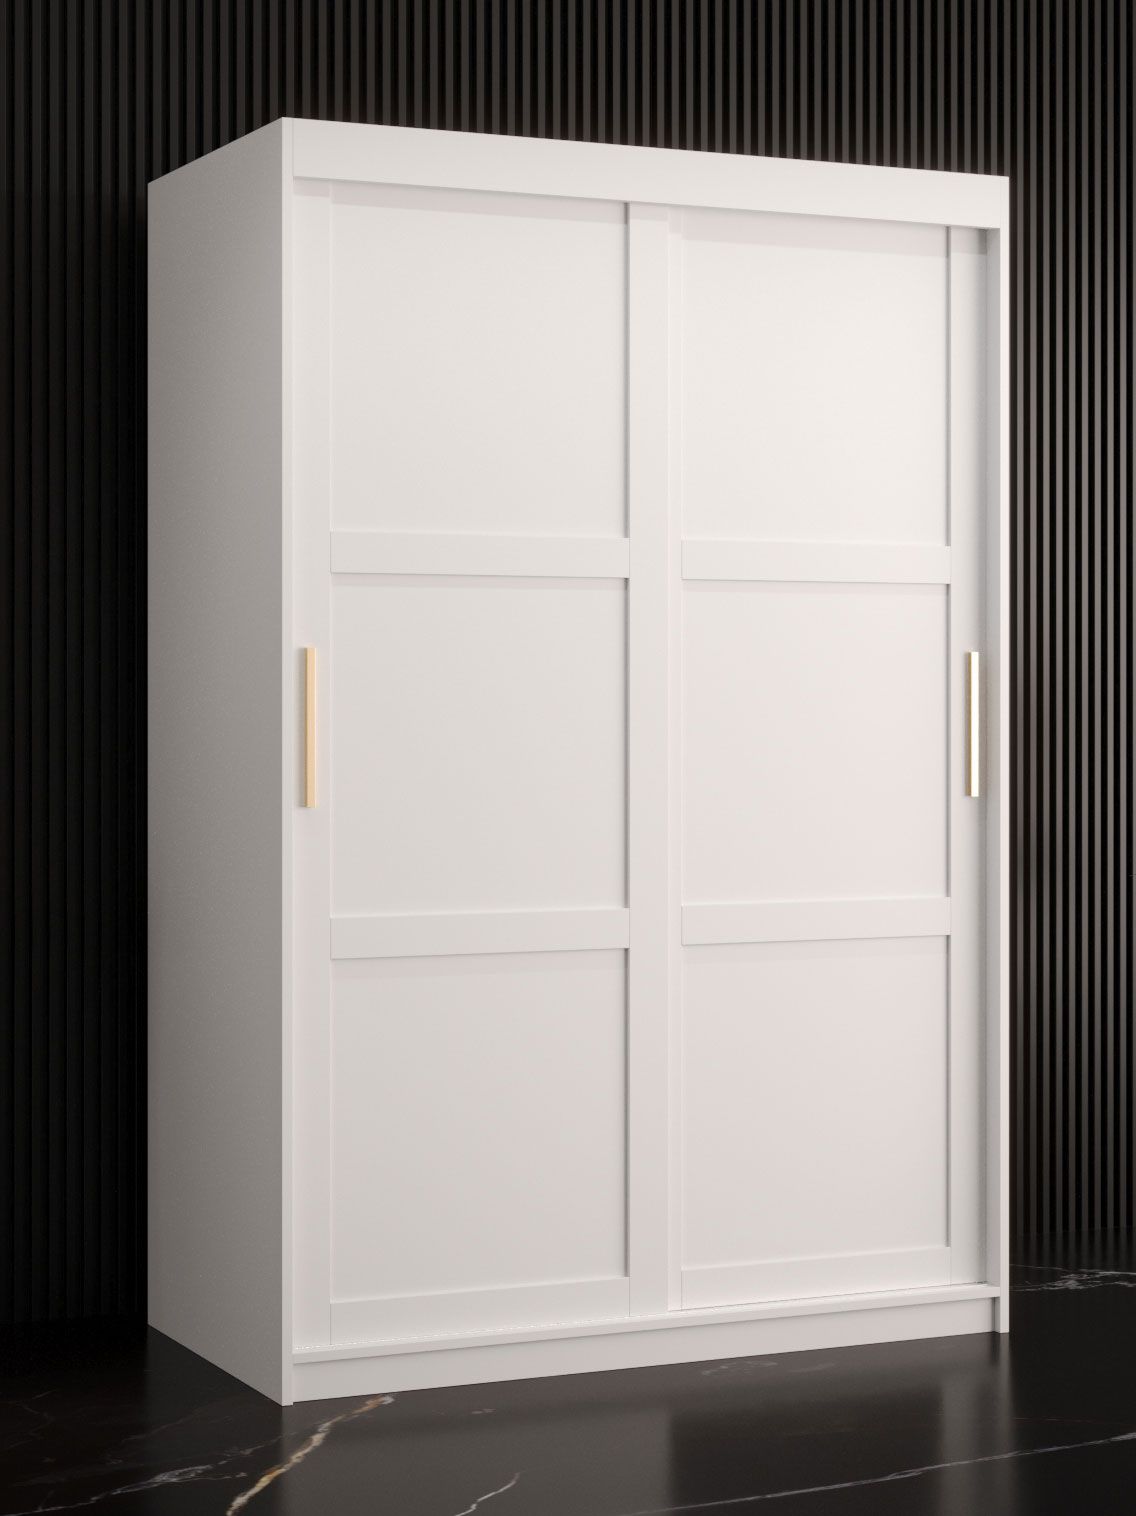 eenvoudige kledingkast met voldoende opbergruimte Liskamm 05, kleur: mat wit - afmetingen: 200 x 120 x 62 cm (H x B x D), met vijf vakken en twee kledingroedes